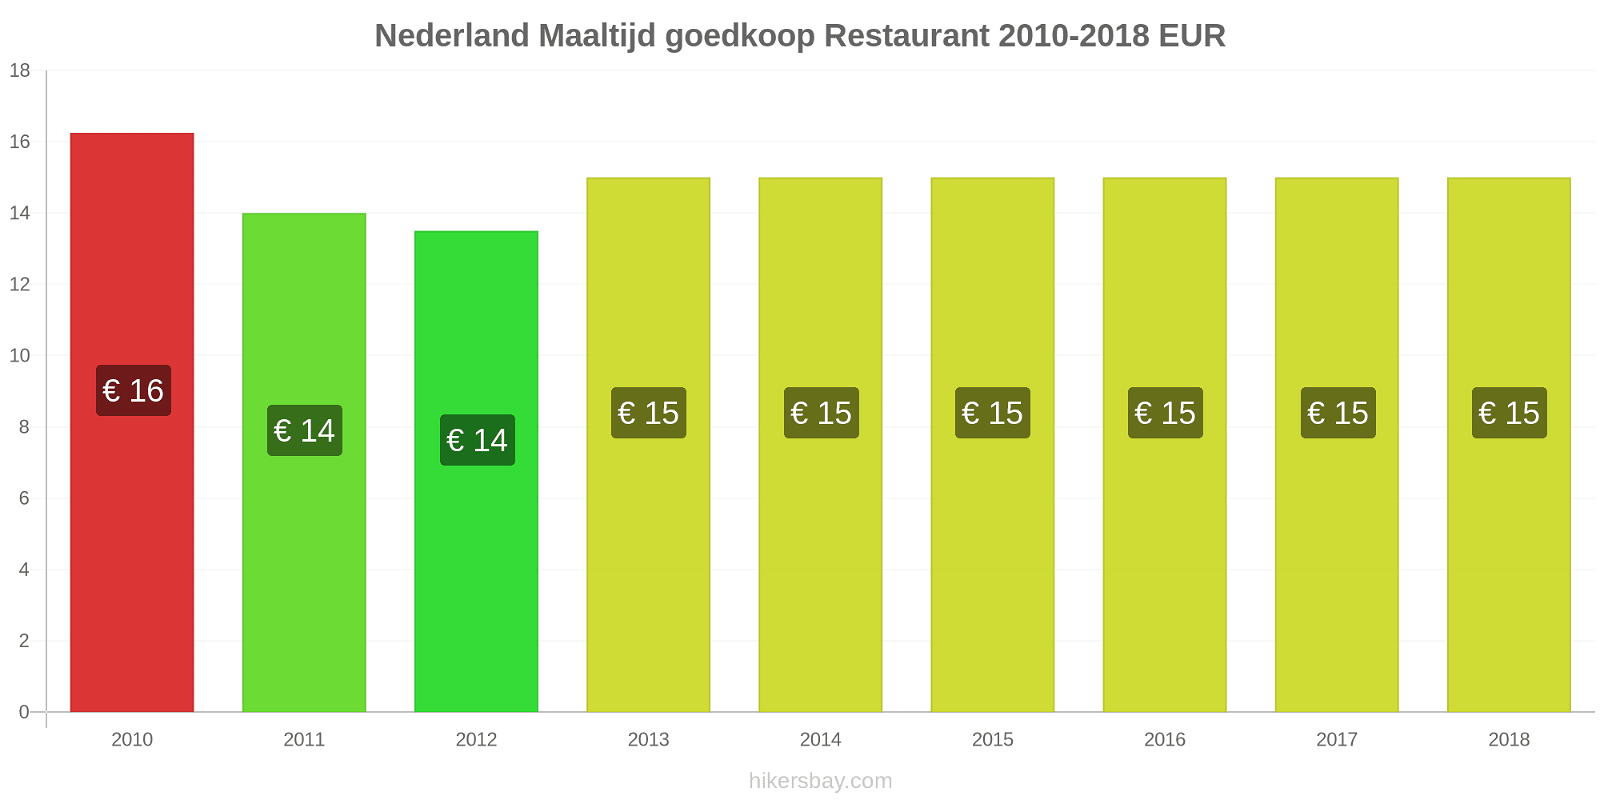 Nederland prijswijzigingen Maaltijd in een goedkoop restaurant hikersbay.com